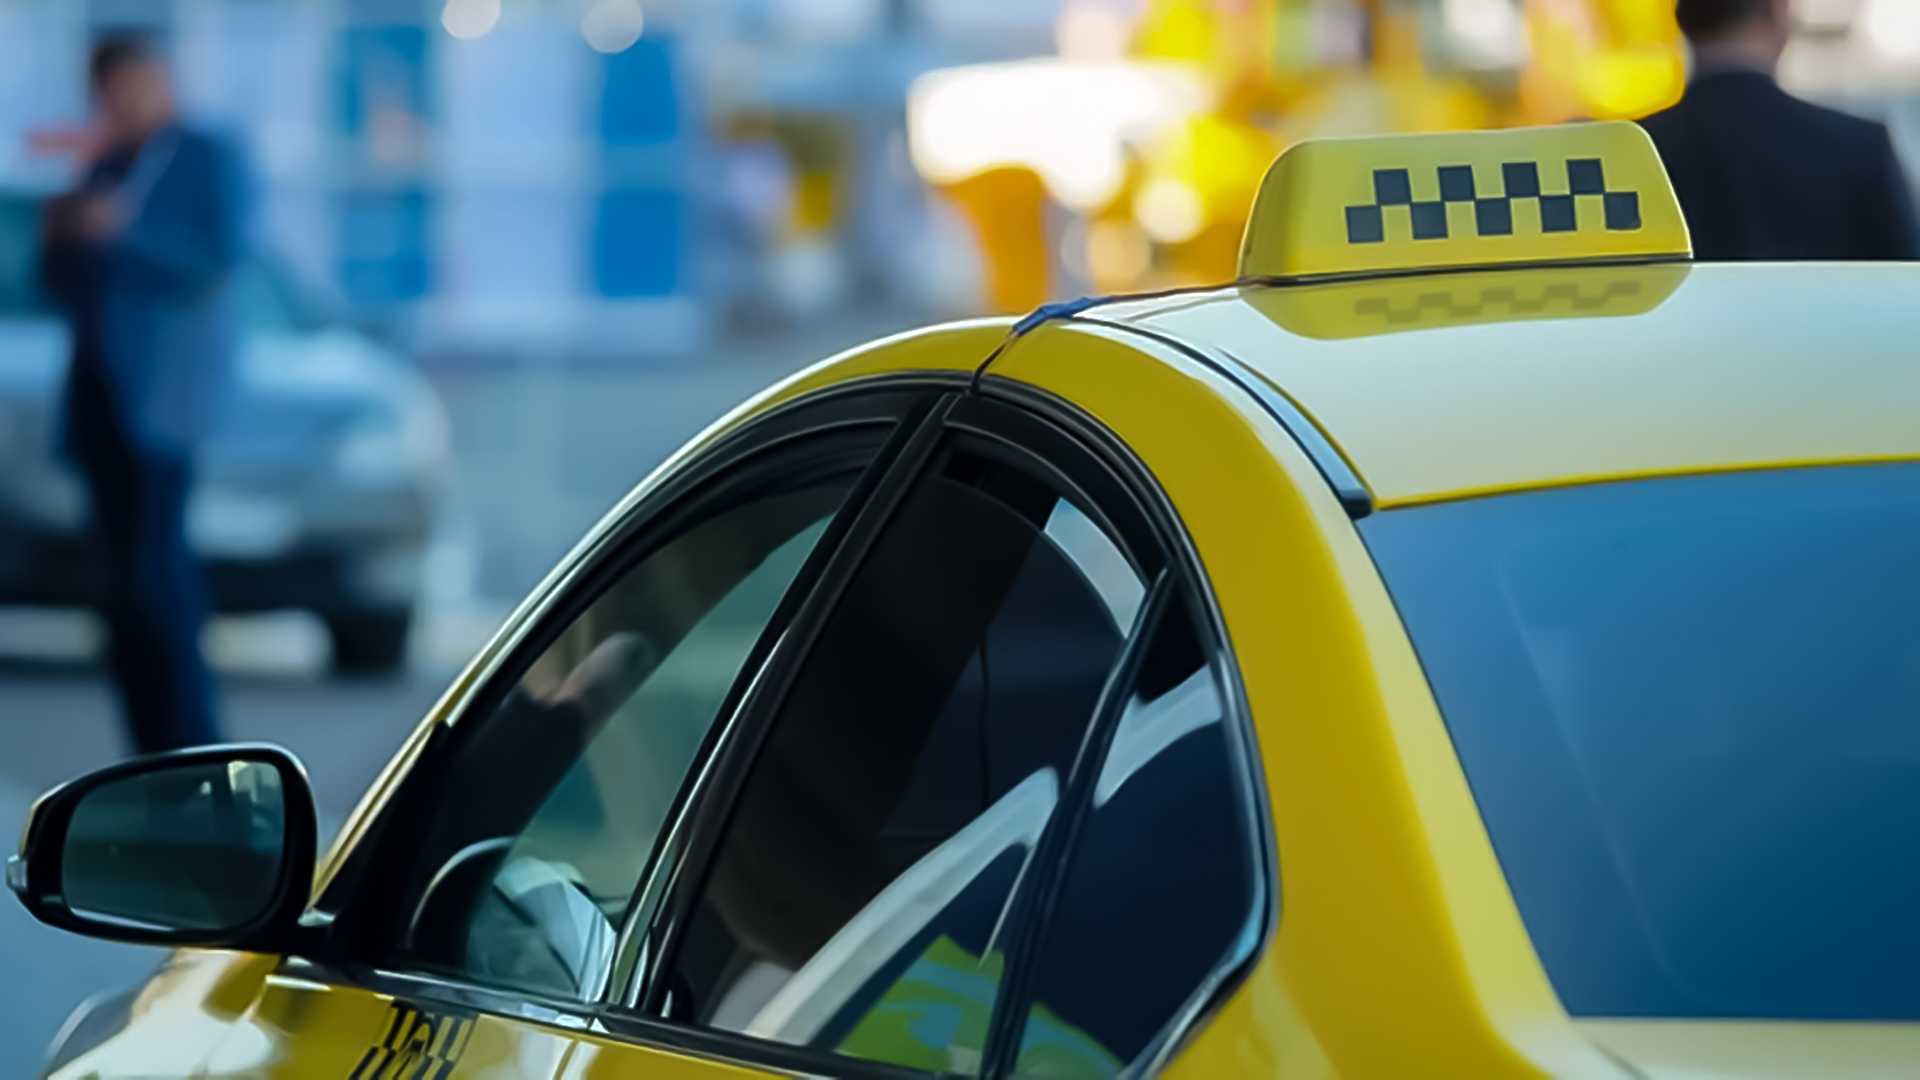 Территориальный отдел Управления Роспотребнадзора по Белгородской области в Валуйском районе проводит консультирование по услугам такси и каршеринга.